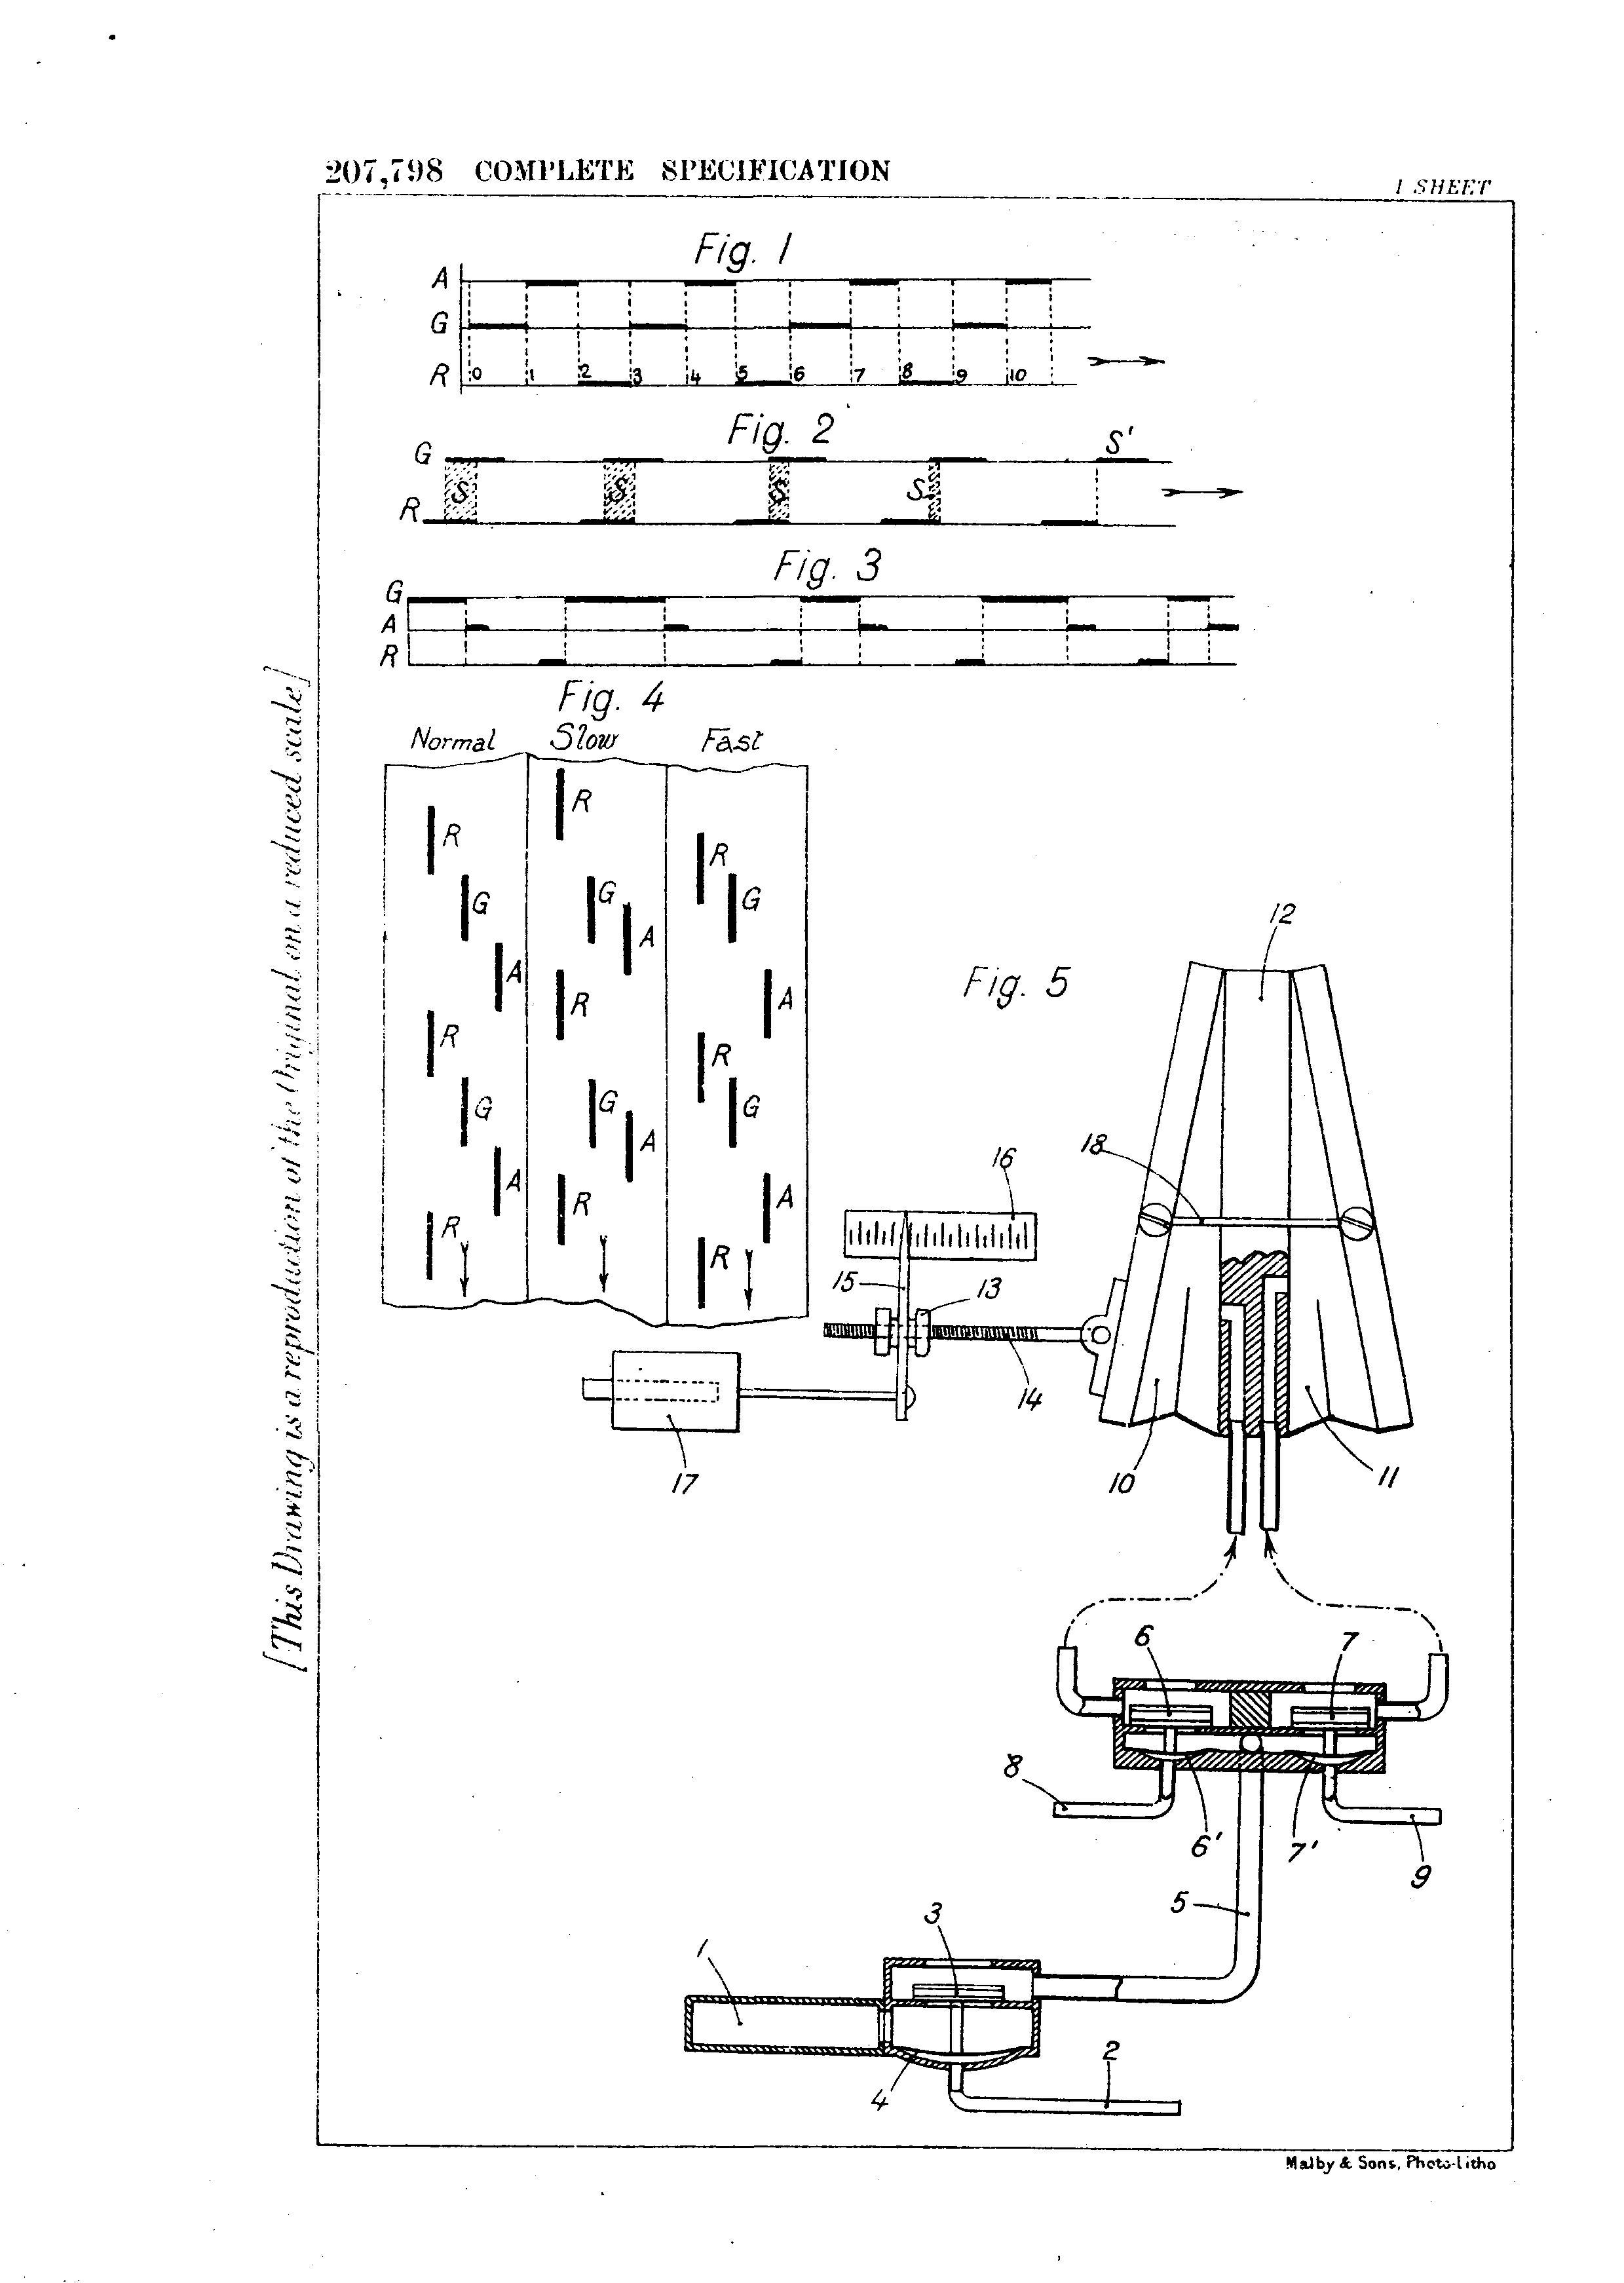 Pleyel synchronization patent illustrations - (1923)